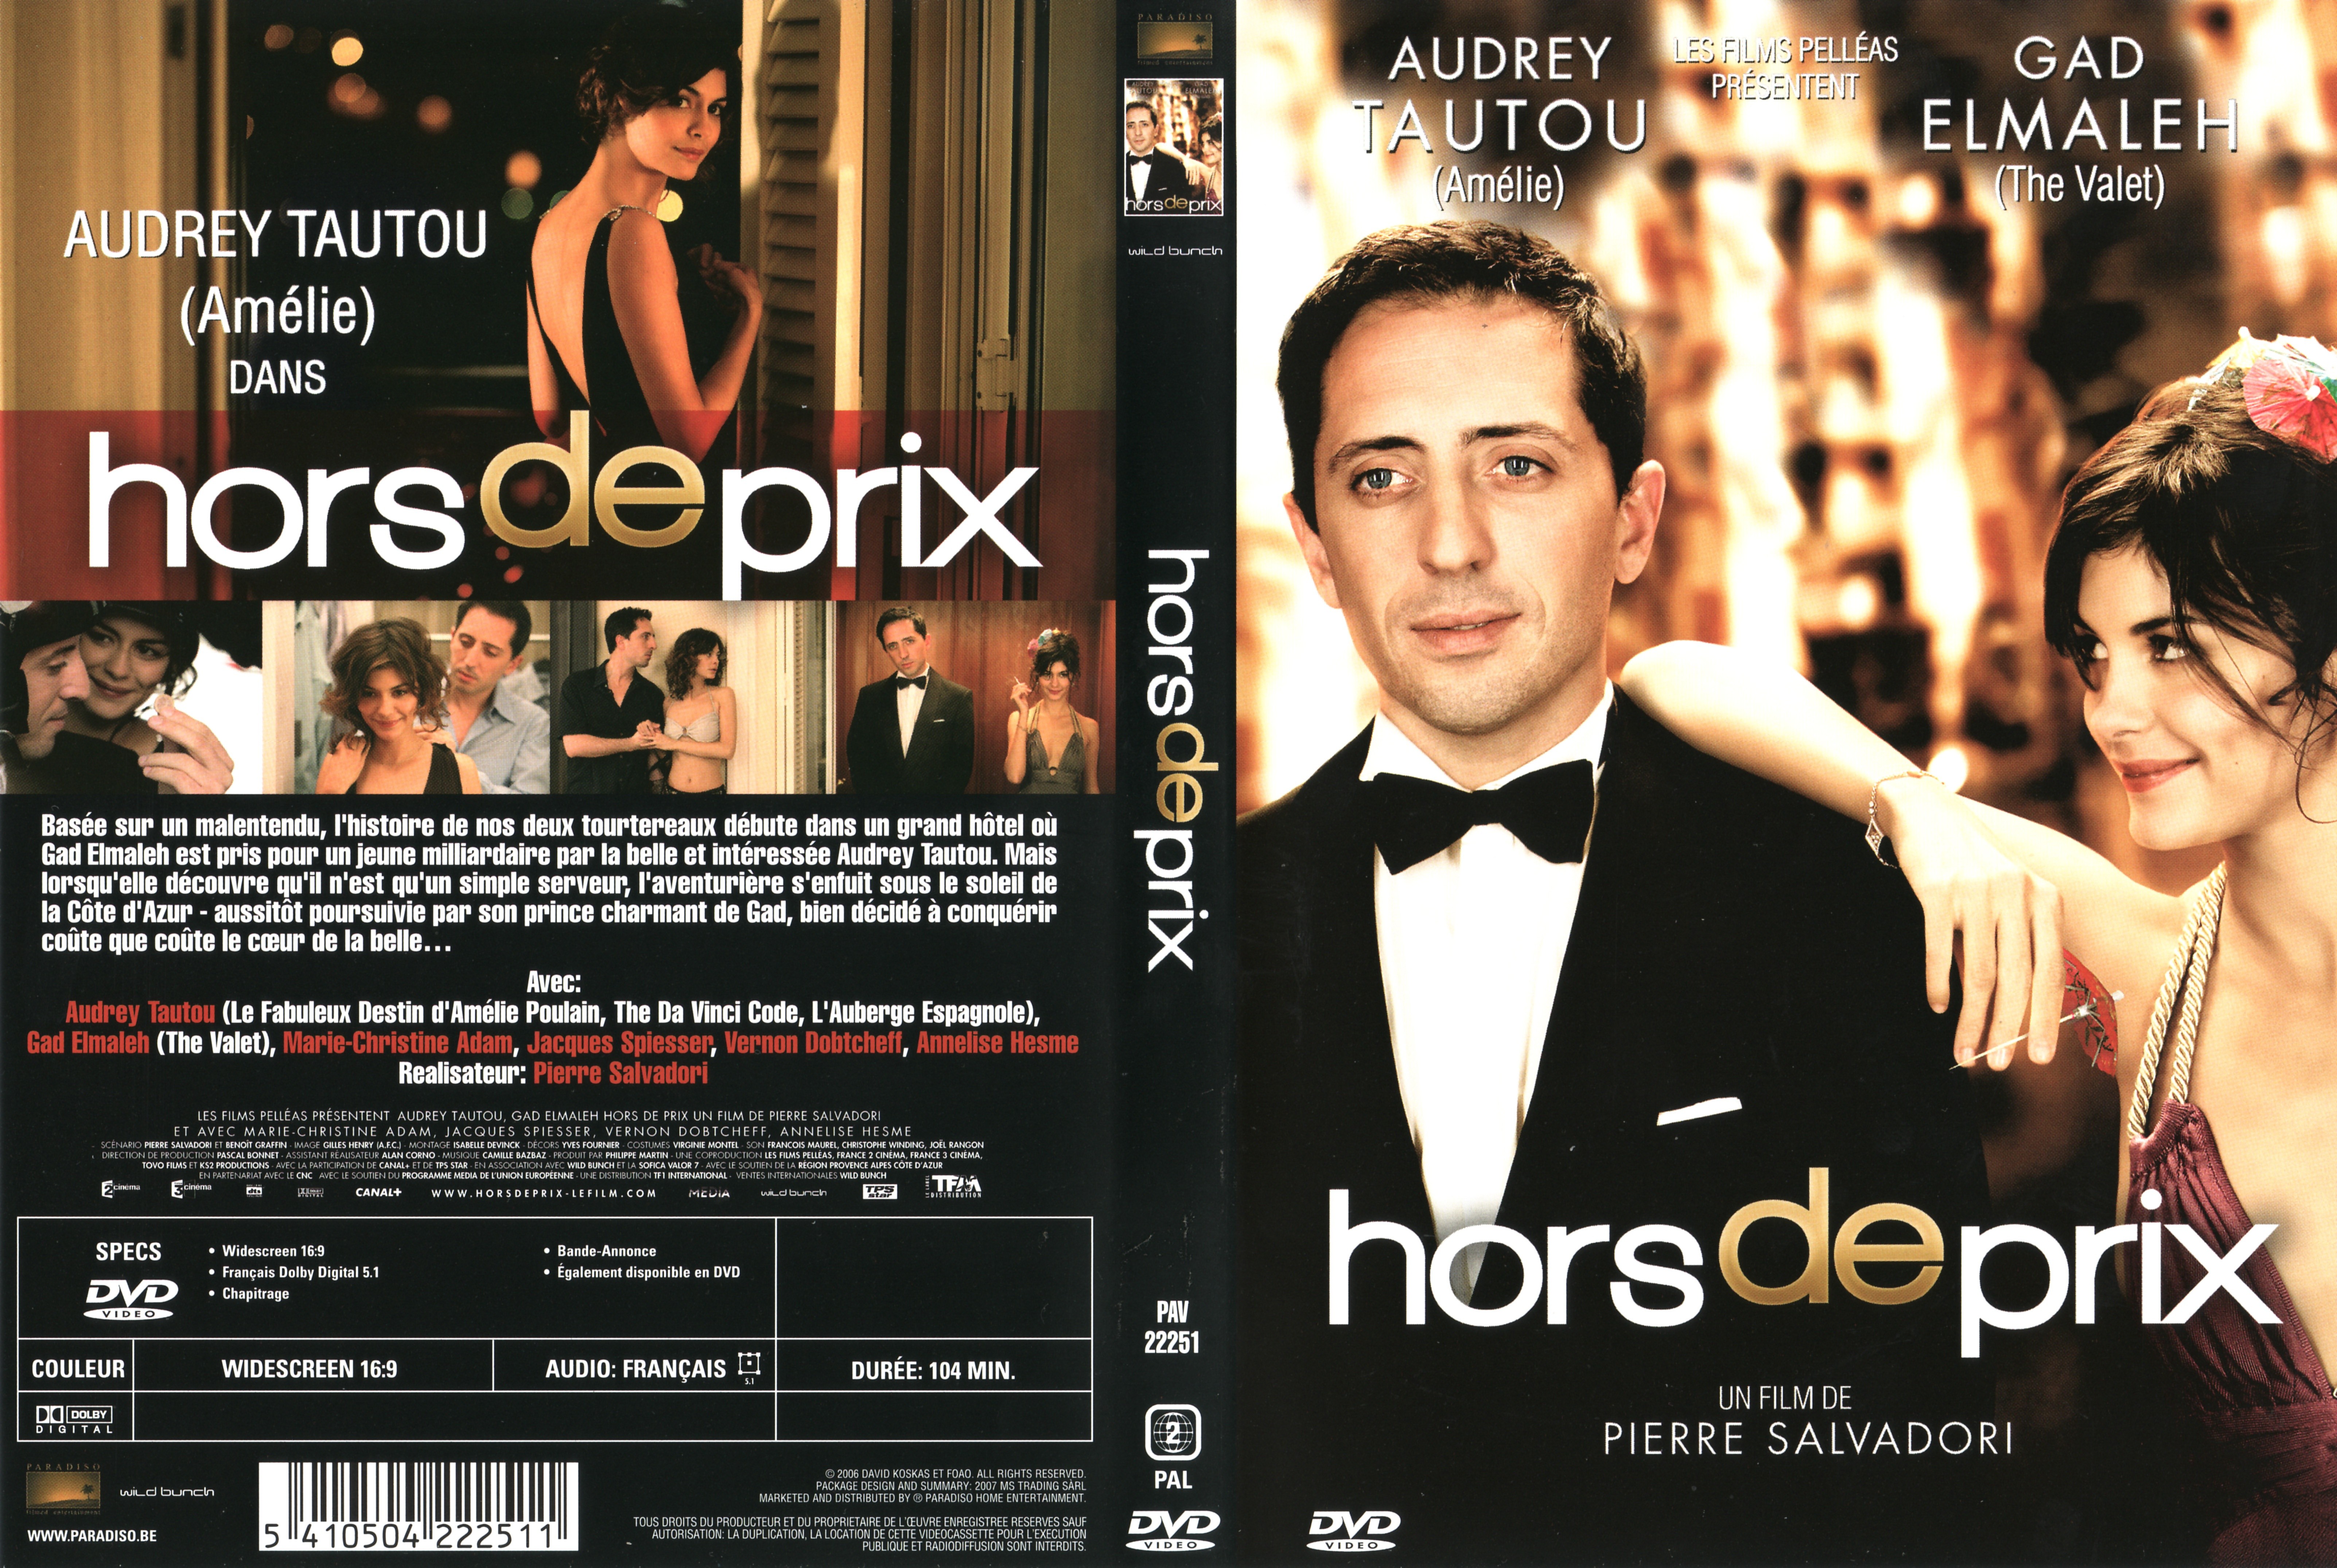 Jaquette DVD Hors de prix v2